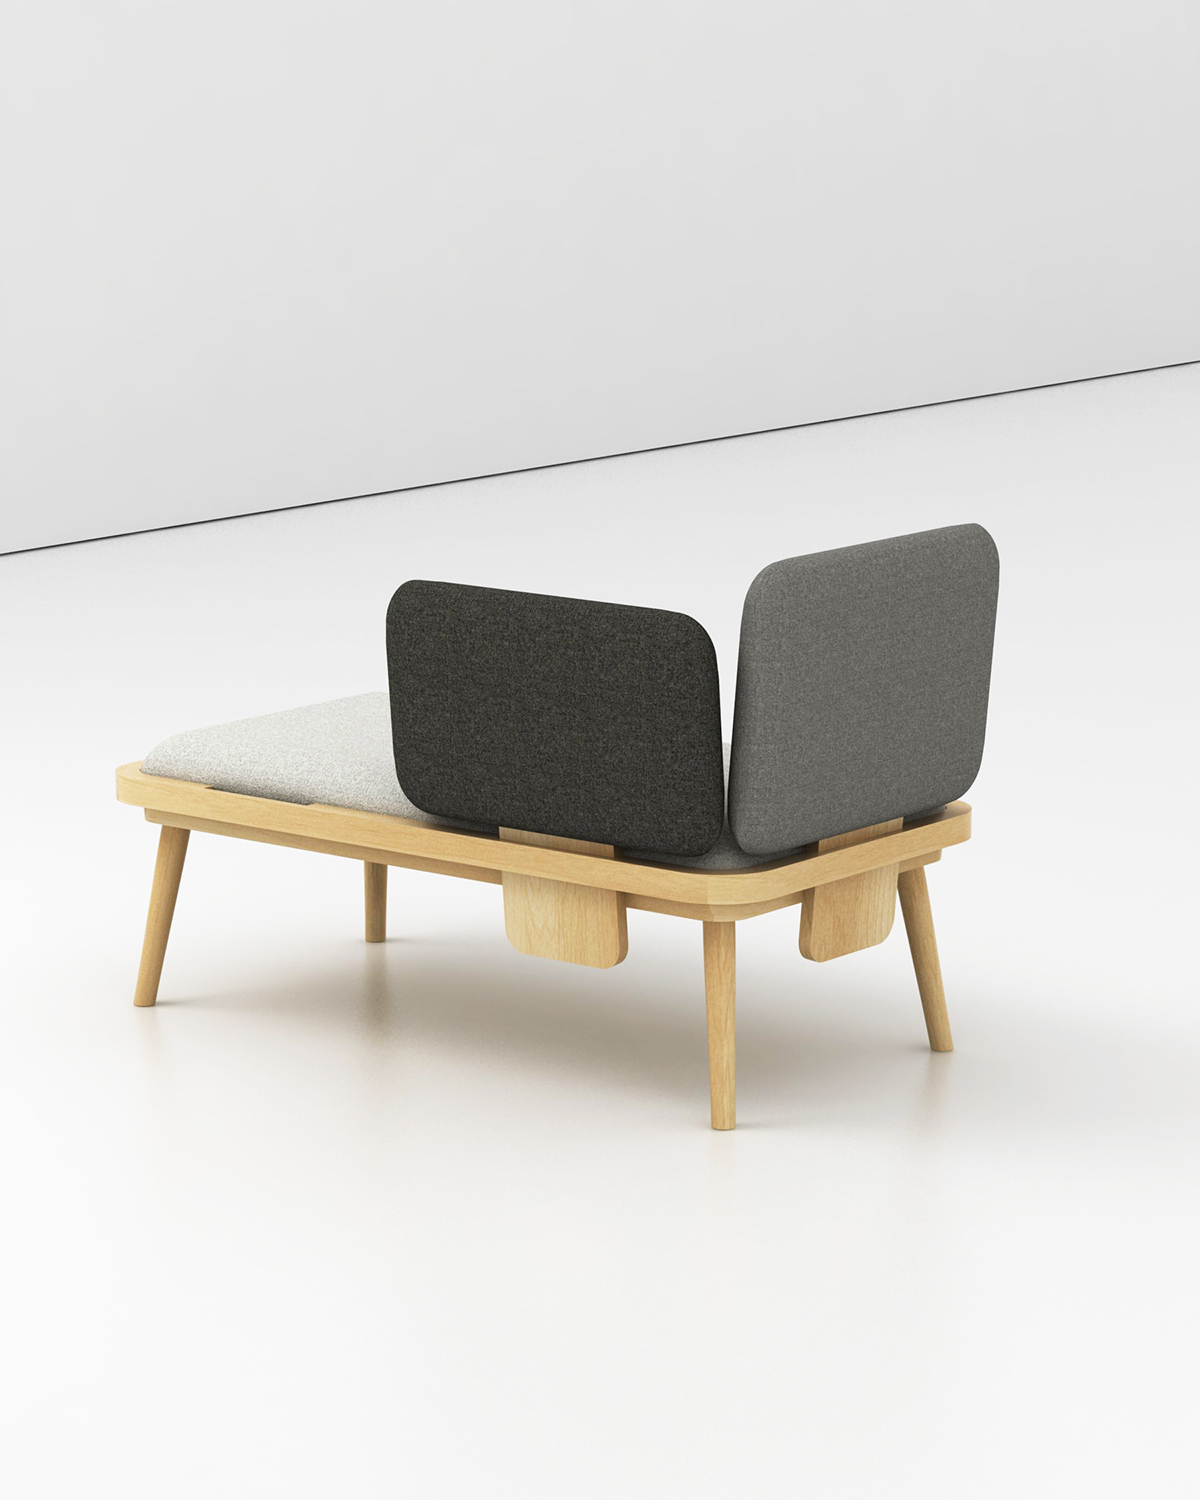 design banquette modulable Aurèle Chaudoye Simon Evrard papimami.studio Interior bench removable textile fabric mobilité assise